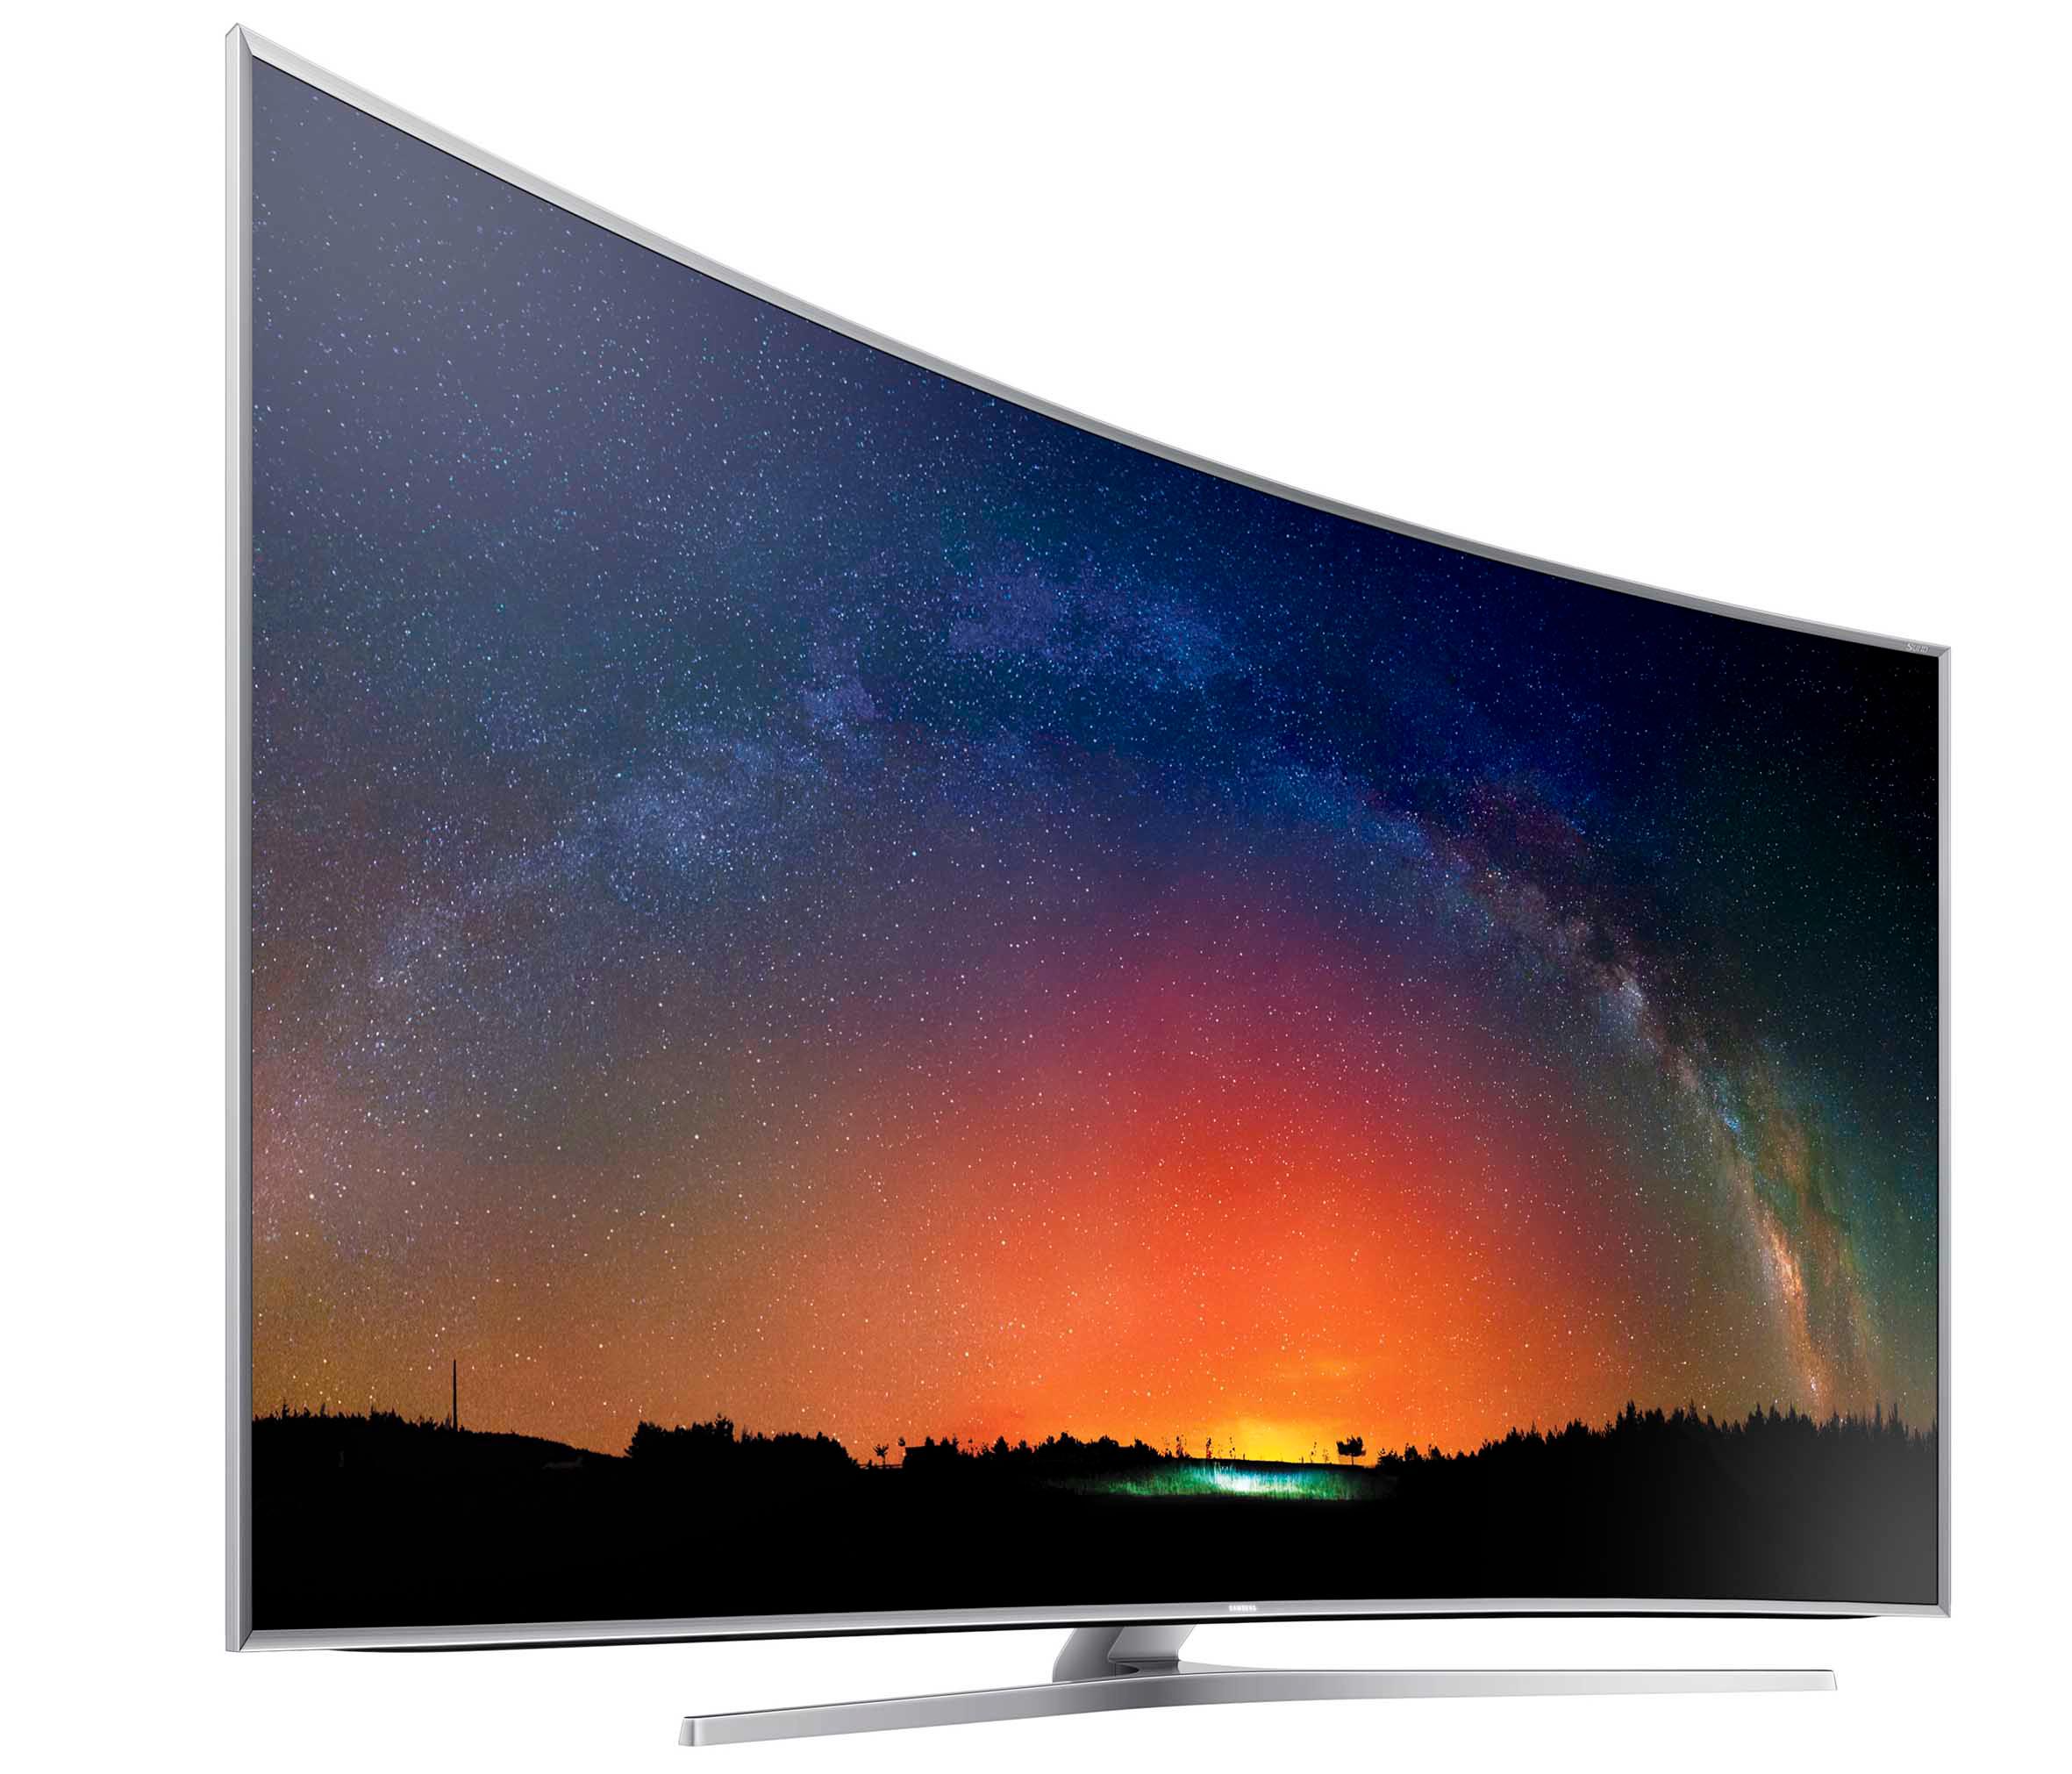 SUHD: Samsung ønsker å distansere seg fra konvensjonelle LCD-TV-er med sin nye quantum dot teknologi. Den gir etter det vi kan bedømme like bra farger som OLED og enda bedre lysstyrke. Sortnivået står litt tilbake for OLED, men denne toppmodellen har direkte-LED og kommer i nærheten.